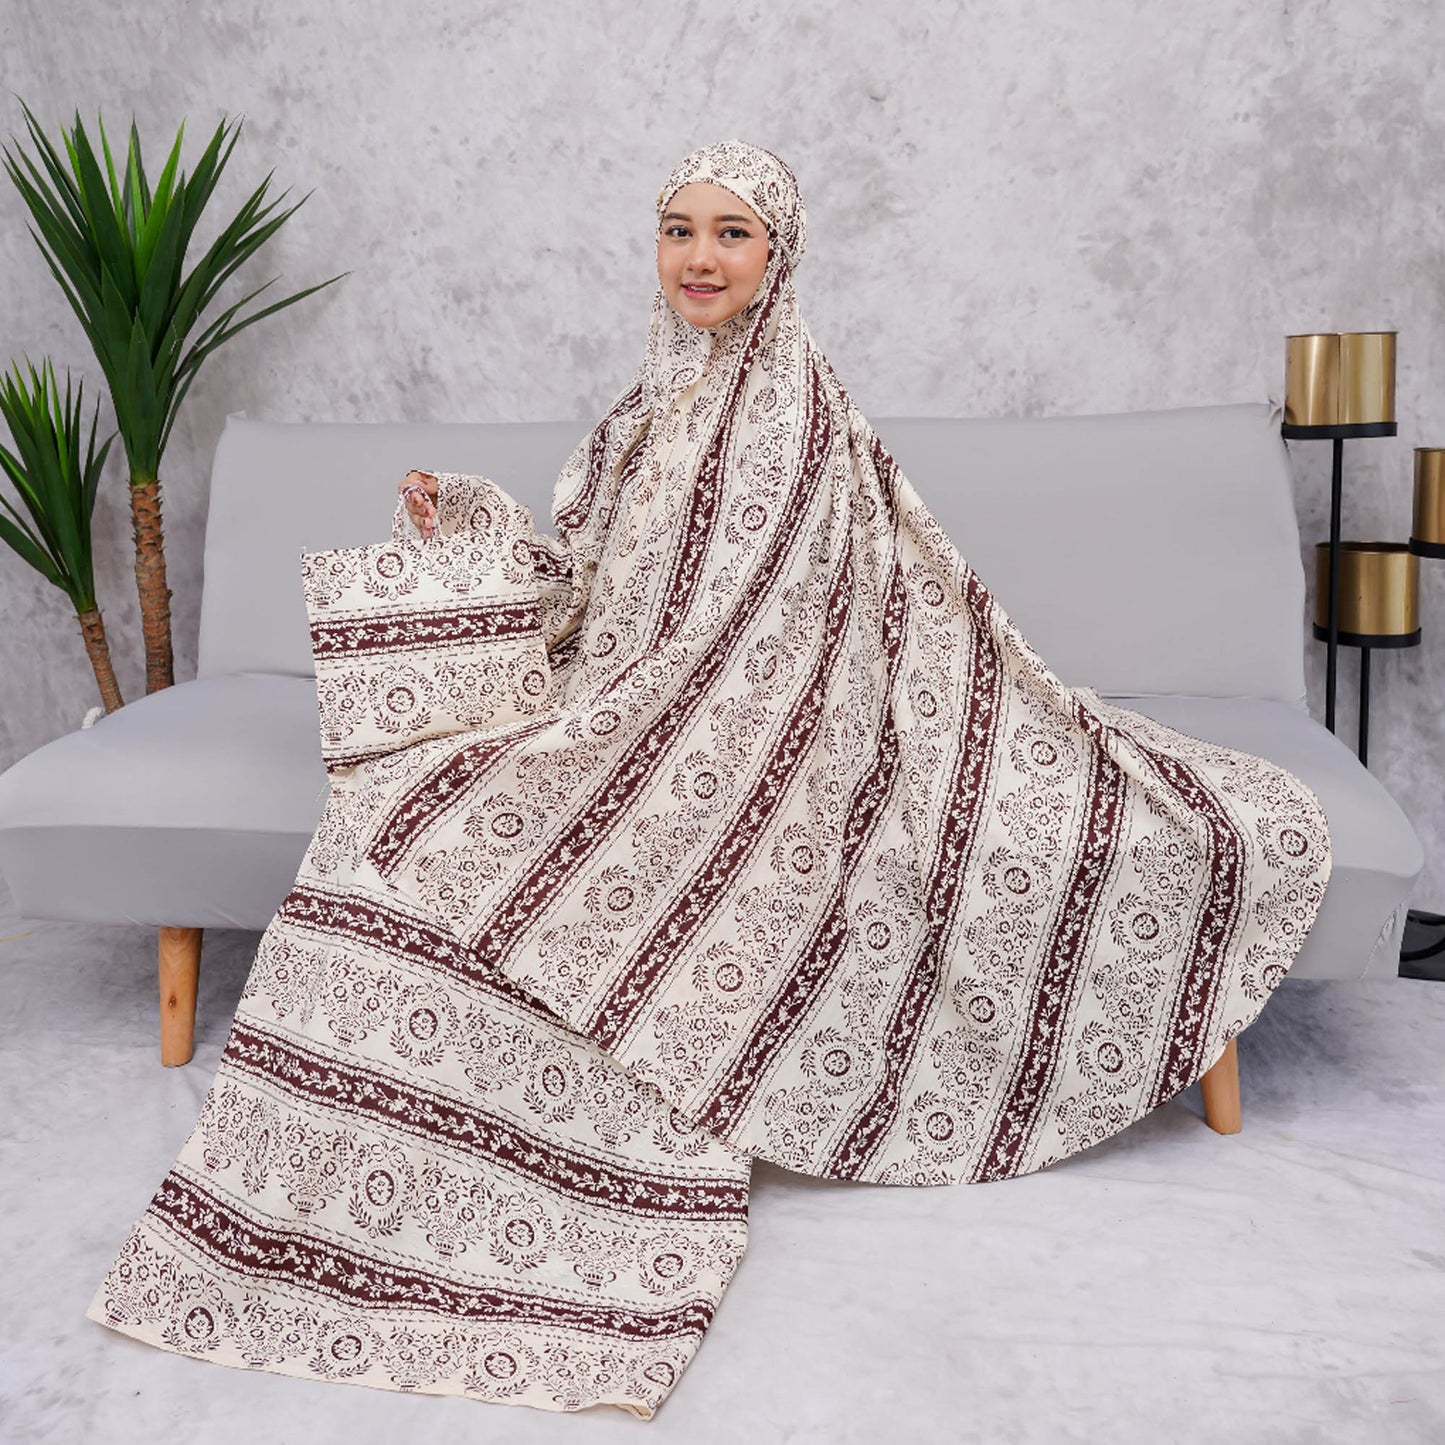 ZHAFIRA Variatie Volwassen Mukena: de juiste keuze voor een andere look, islamitische gebedsoutfit, Gamis-jurk, gebedsjurk dames, Jilbab-jurk